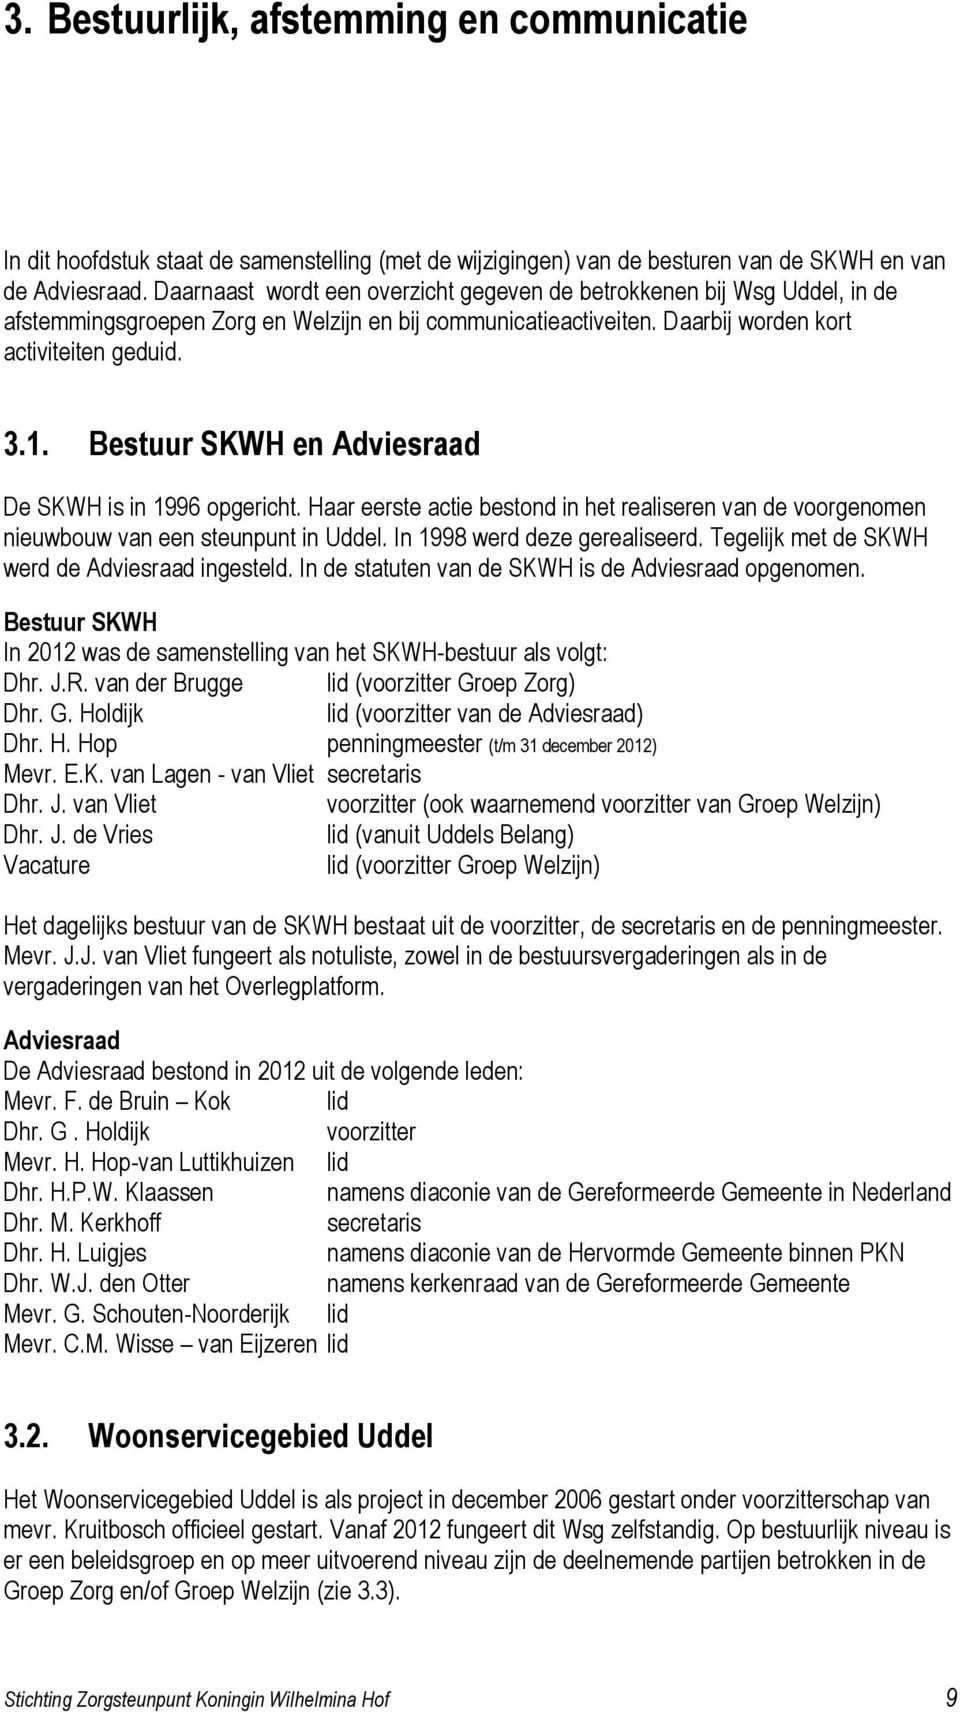 Bestuur SKWH en Adviesraad De SKWH is in 1996 opgericht. Haar eerste actie bestond in het realiseren van de voorgenomen nieuwbouw van een steunpunt in Uddel. In 1998 werd deze gerealiseerd.